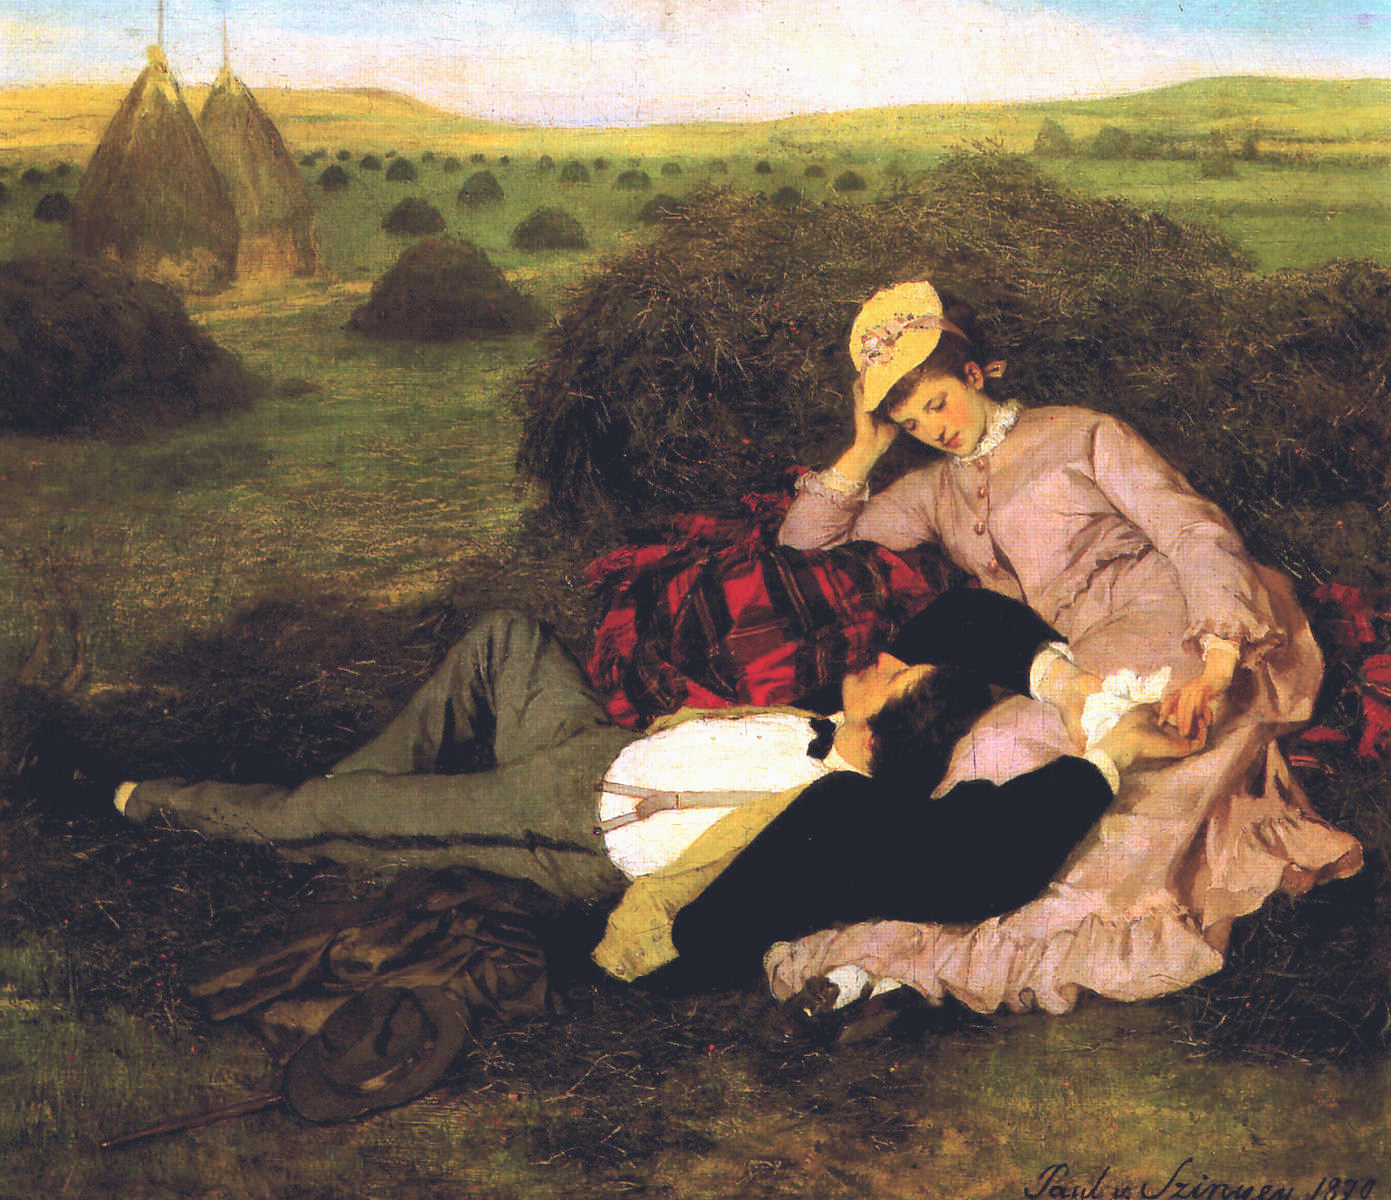 Szerelmespr (Twosome) by Szinyei Merse Pl, 1870